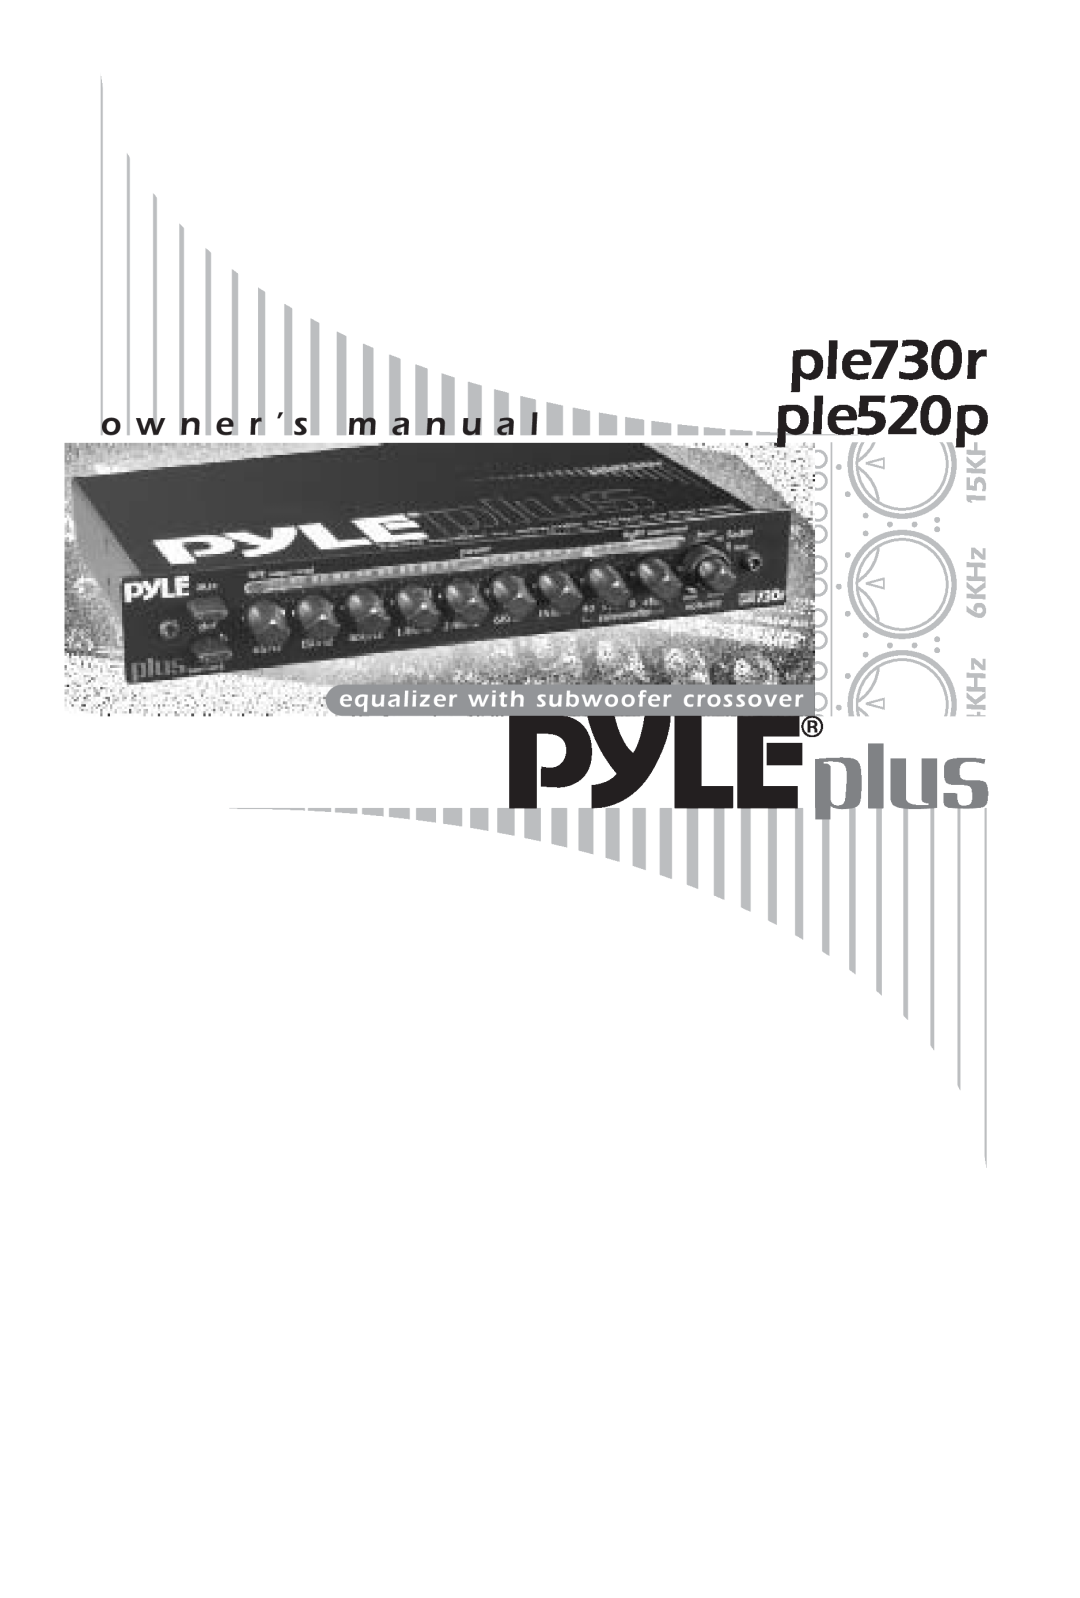 PYLE Audio PLE520P, PLE730R owner manual ple730r ple520p, o w n e r ’ s ma n ua l, 1 H5K, z4KH Hz6K 